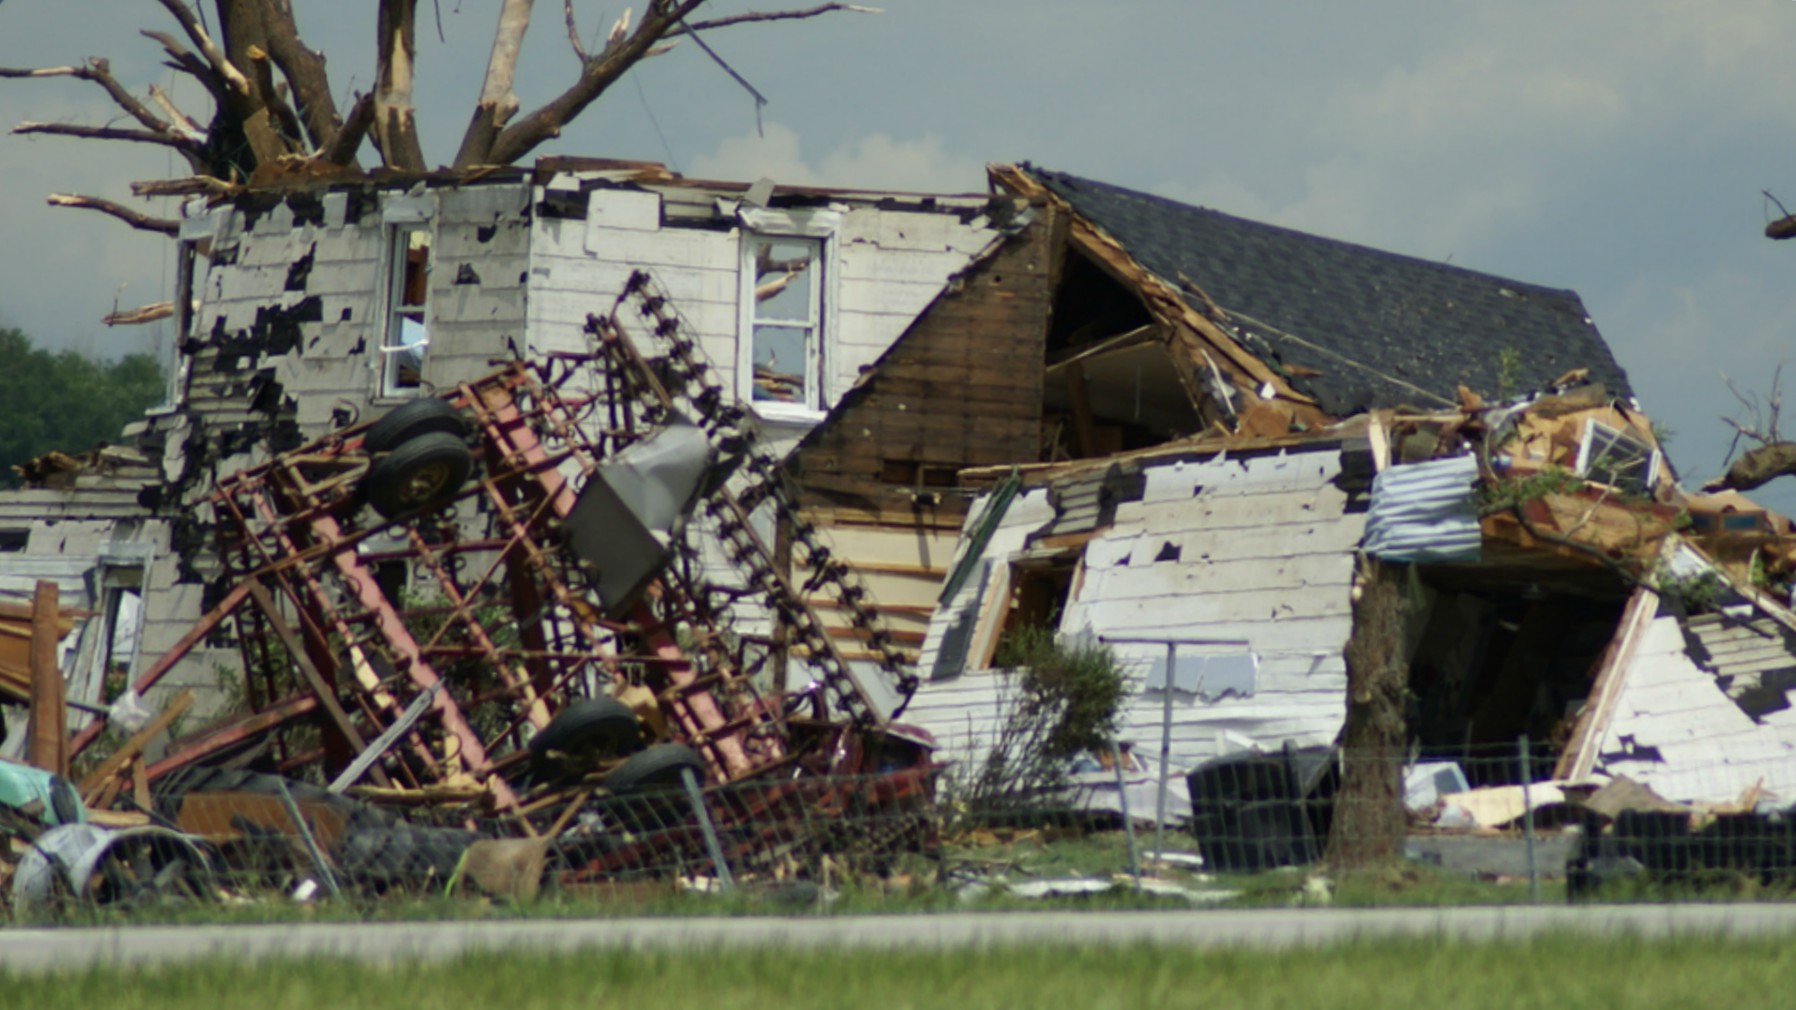 Les tornades provoquent souvent des dégâts effroyables | © Sally9258/Flickr/CC BY 2.0